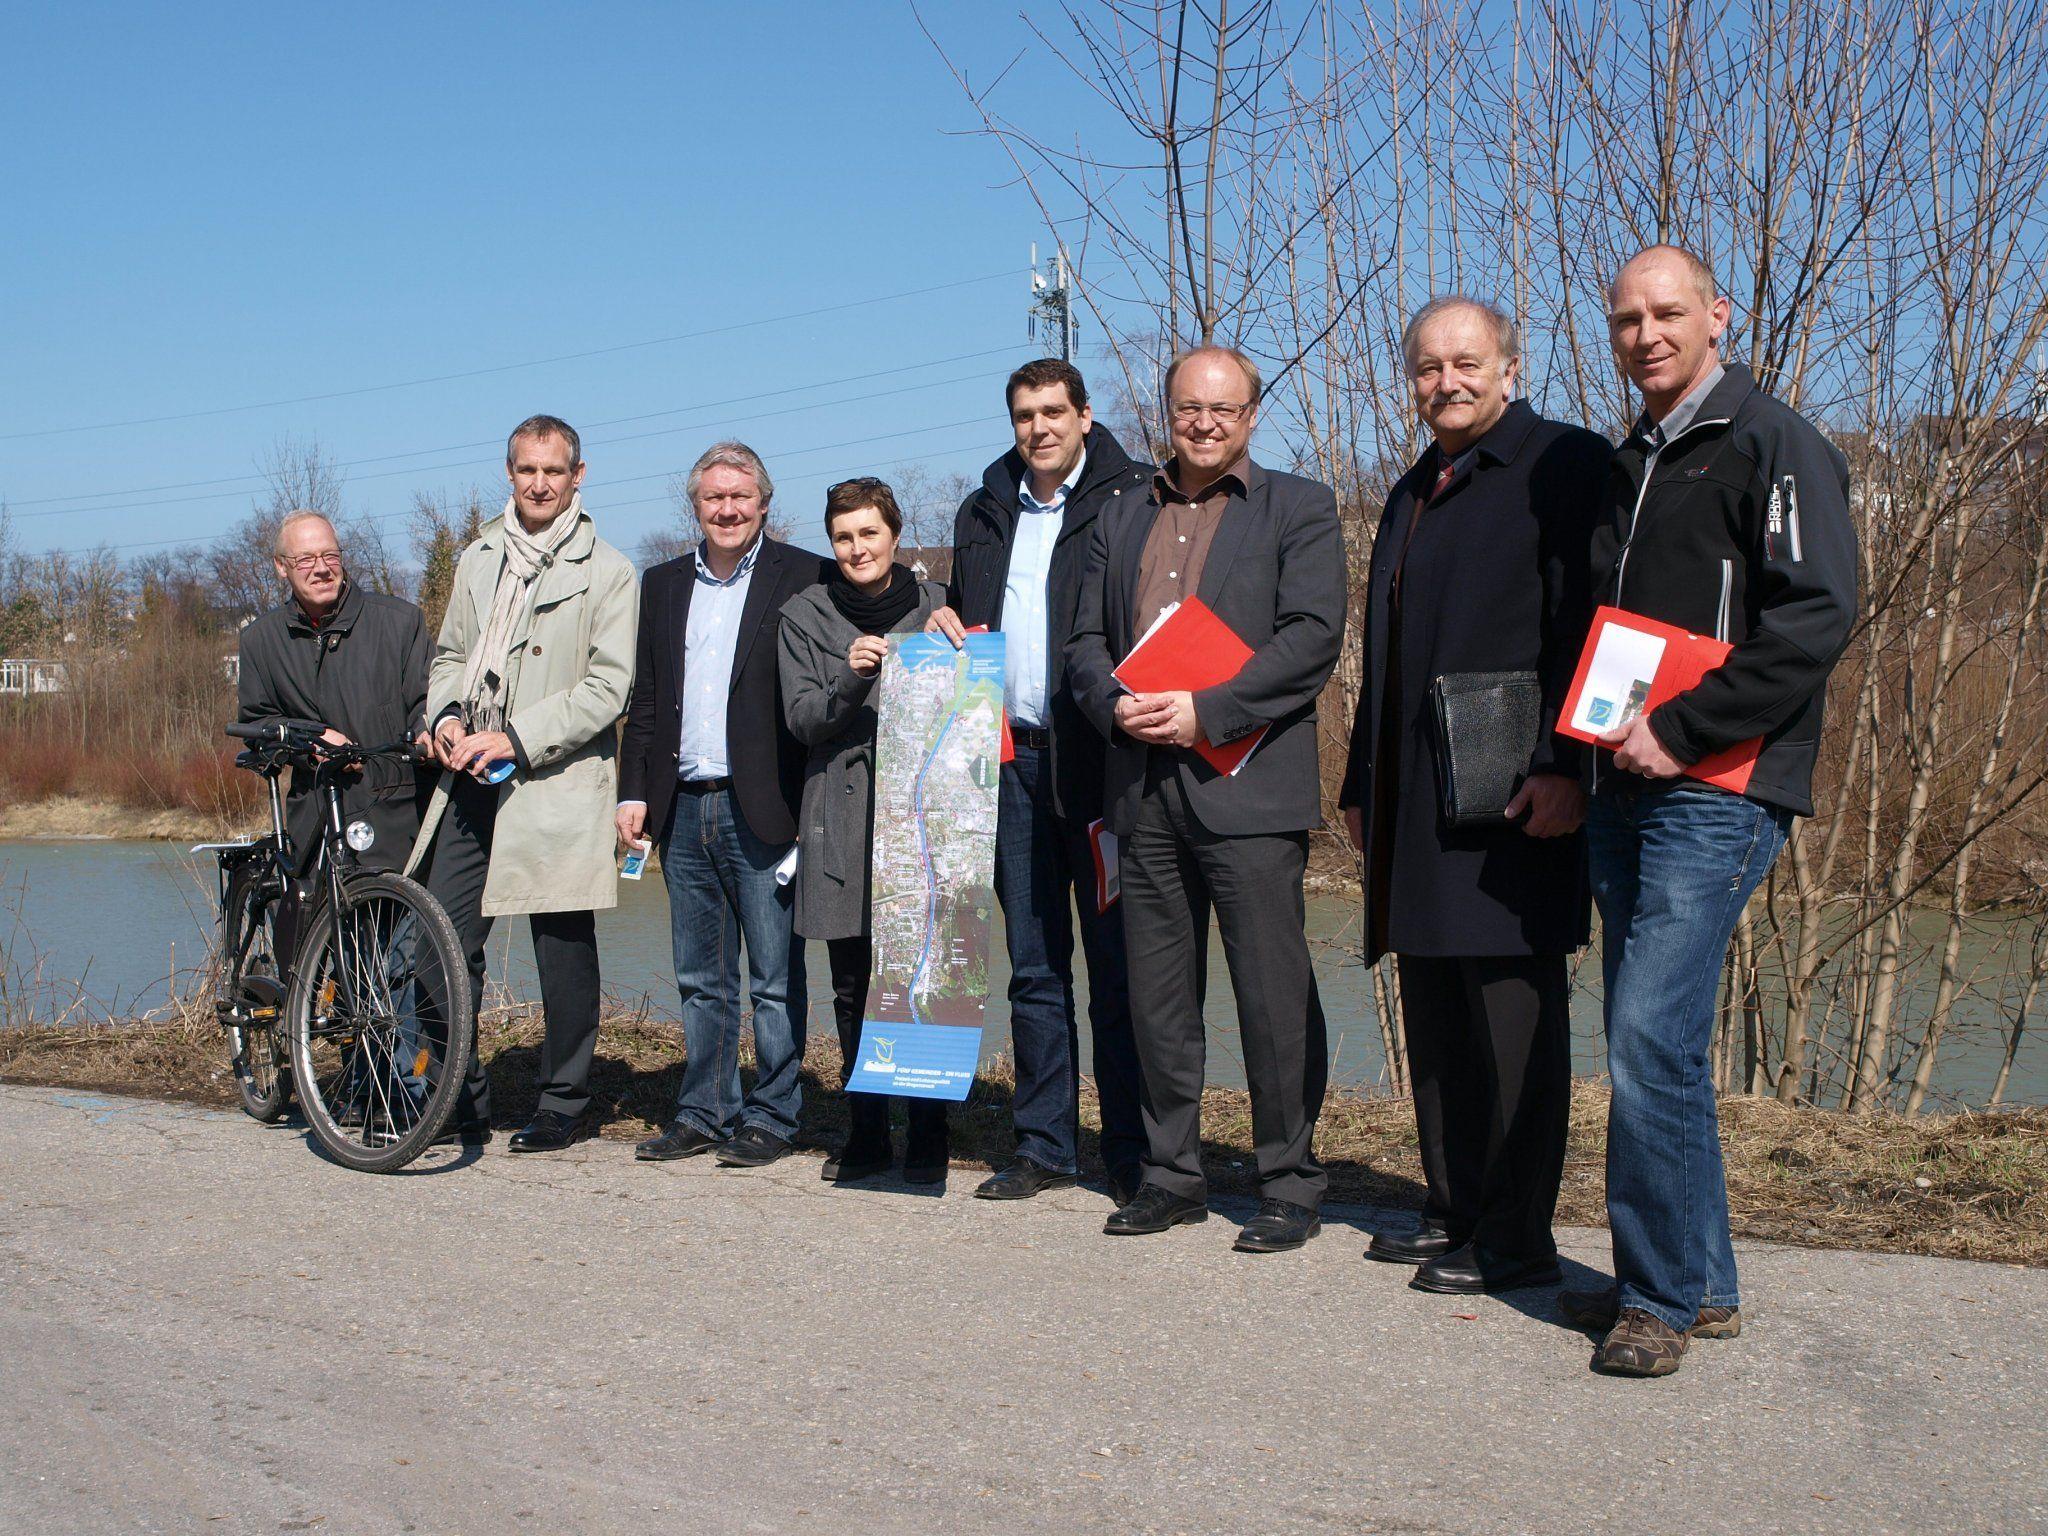 Die Vertreter der 5 Gemeinden bei der Präsentation des neuen Infofolders an der Bregenzerach.